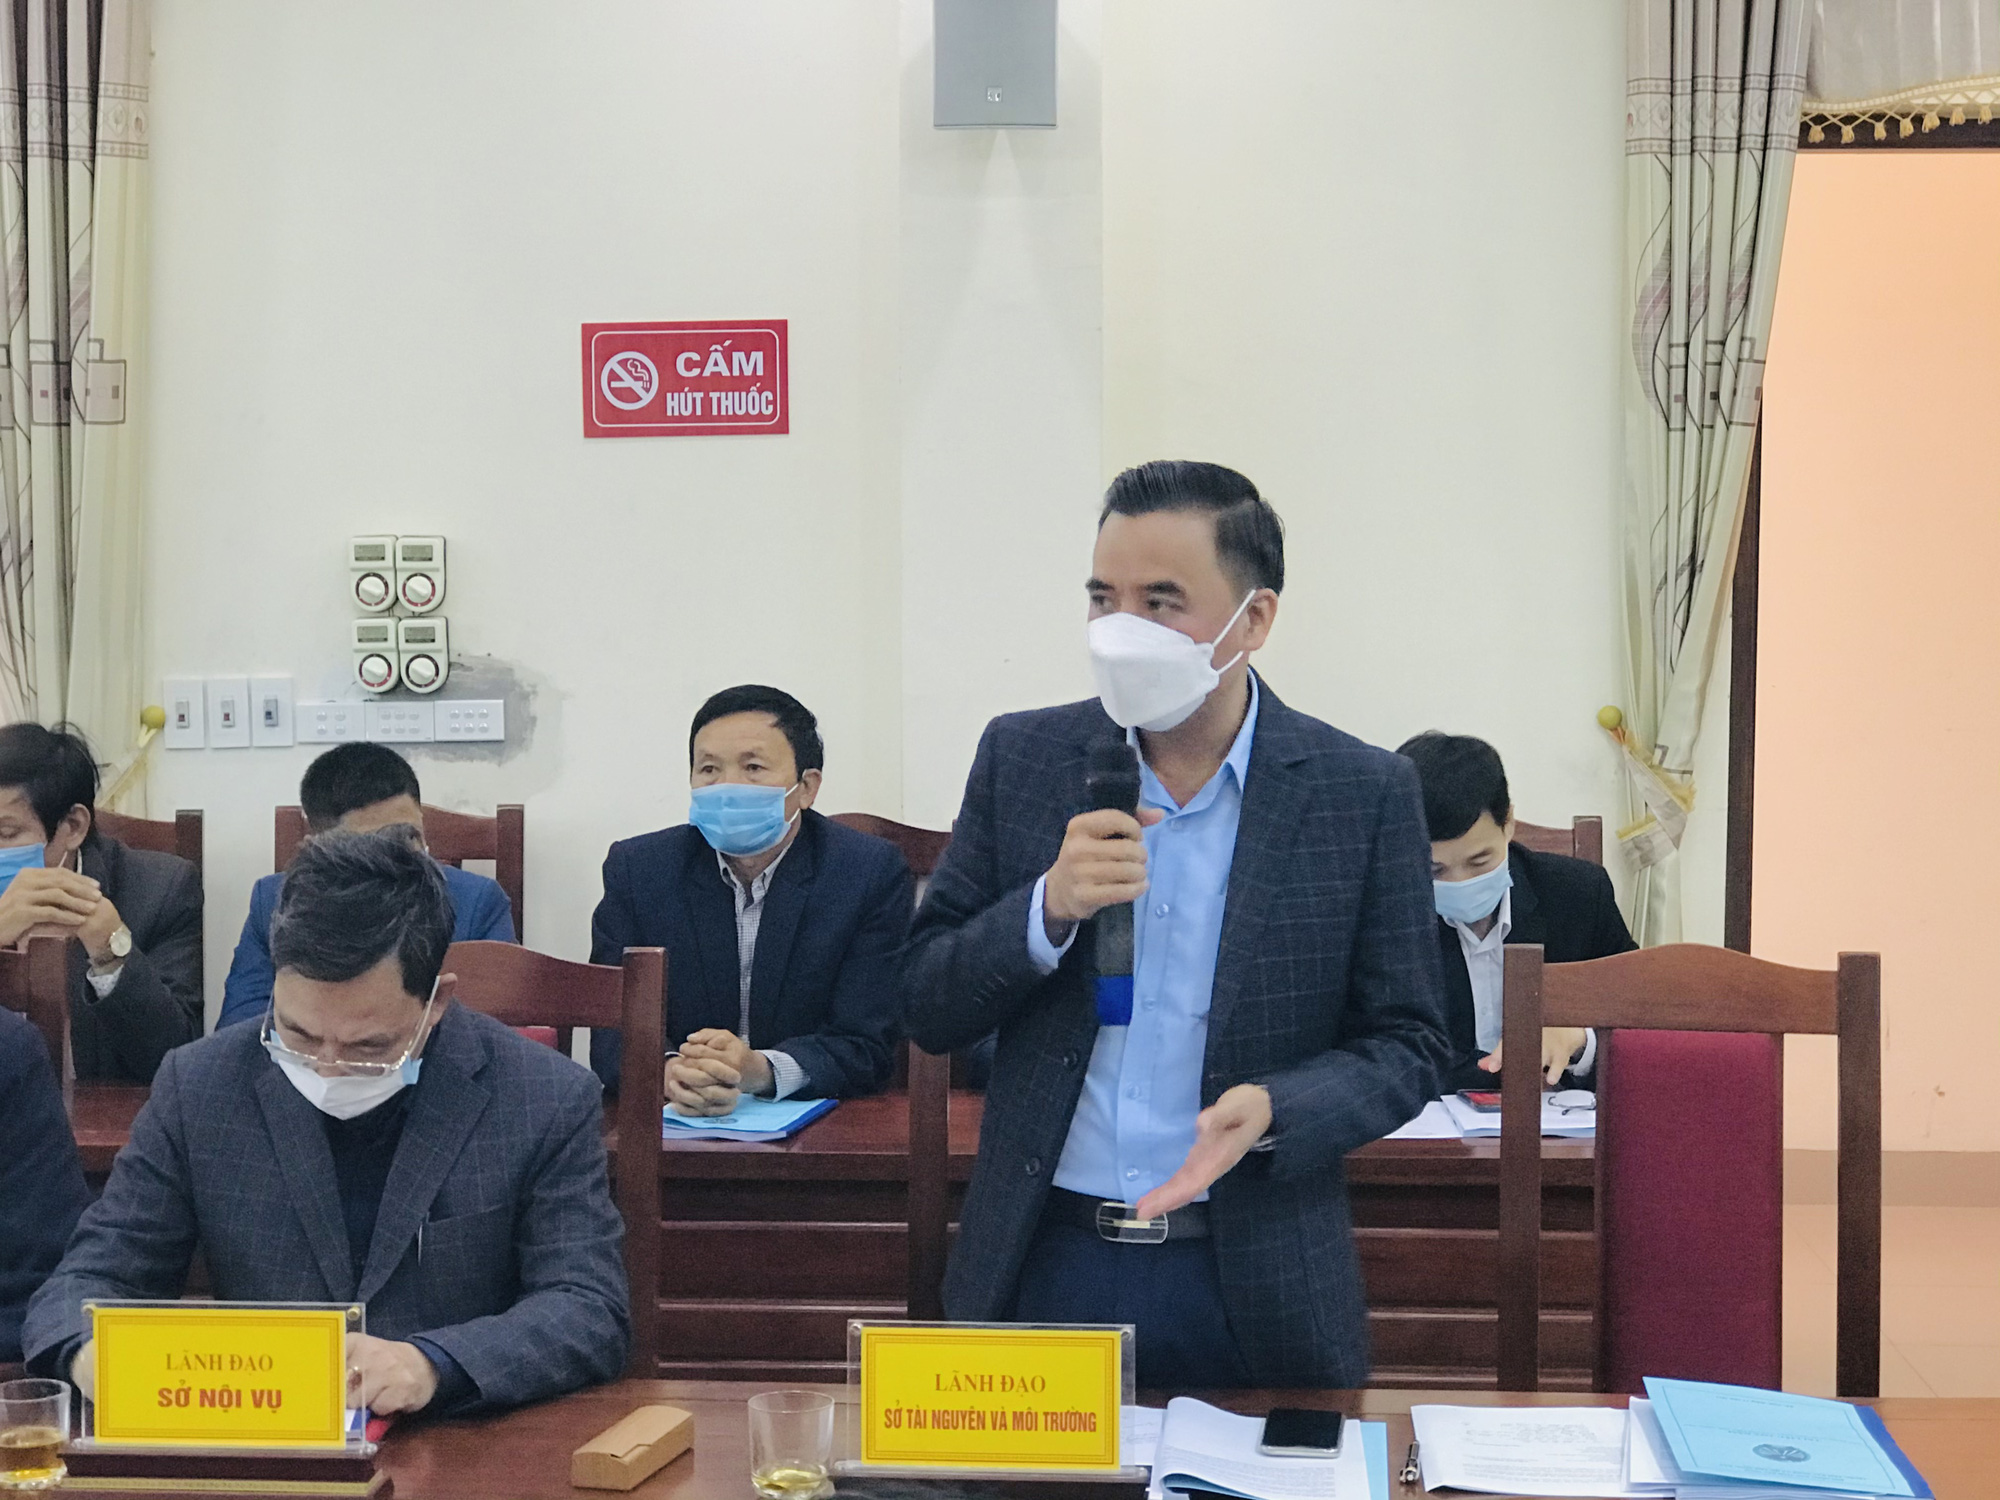 Bắc Ninh: Lãnh đạo tỉnh đối thoại, gỡ khó trong sản xuất nông nghiệp cho nông dân - Ảnh 3.